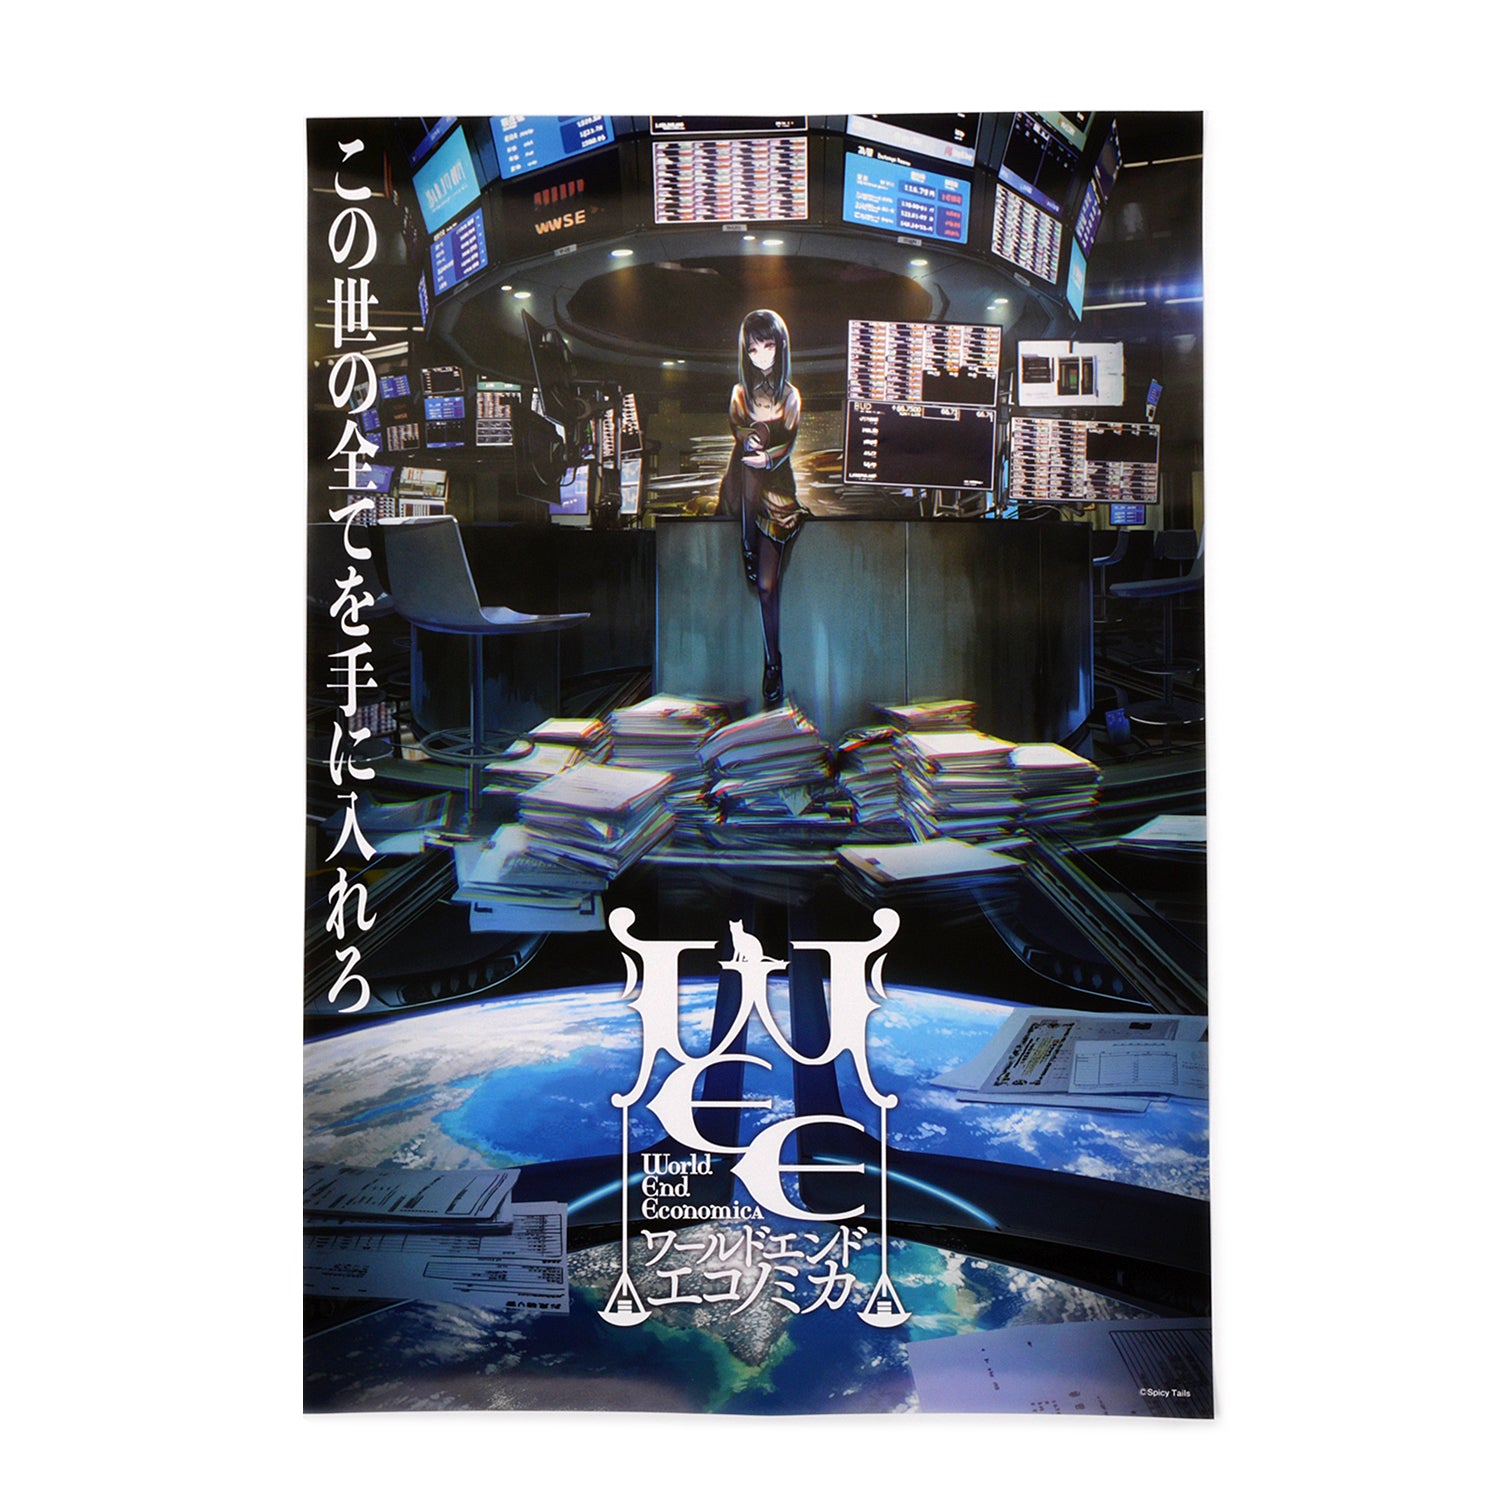 『WORLD END ECONOMiCA』キービジュアルポスター